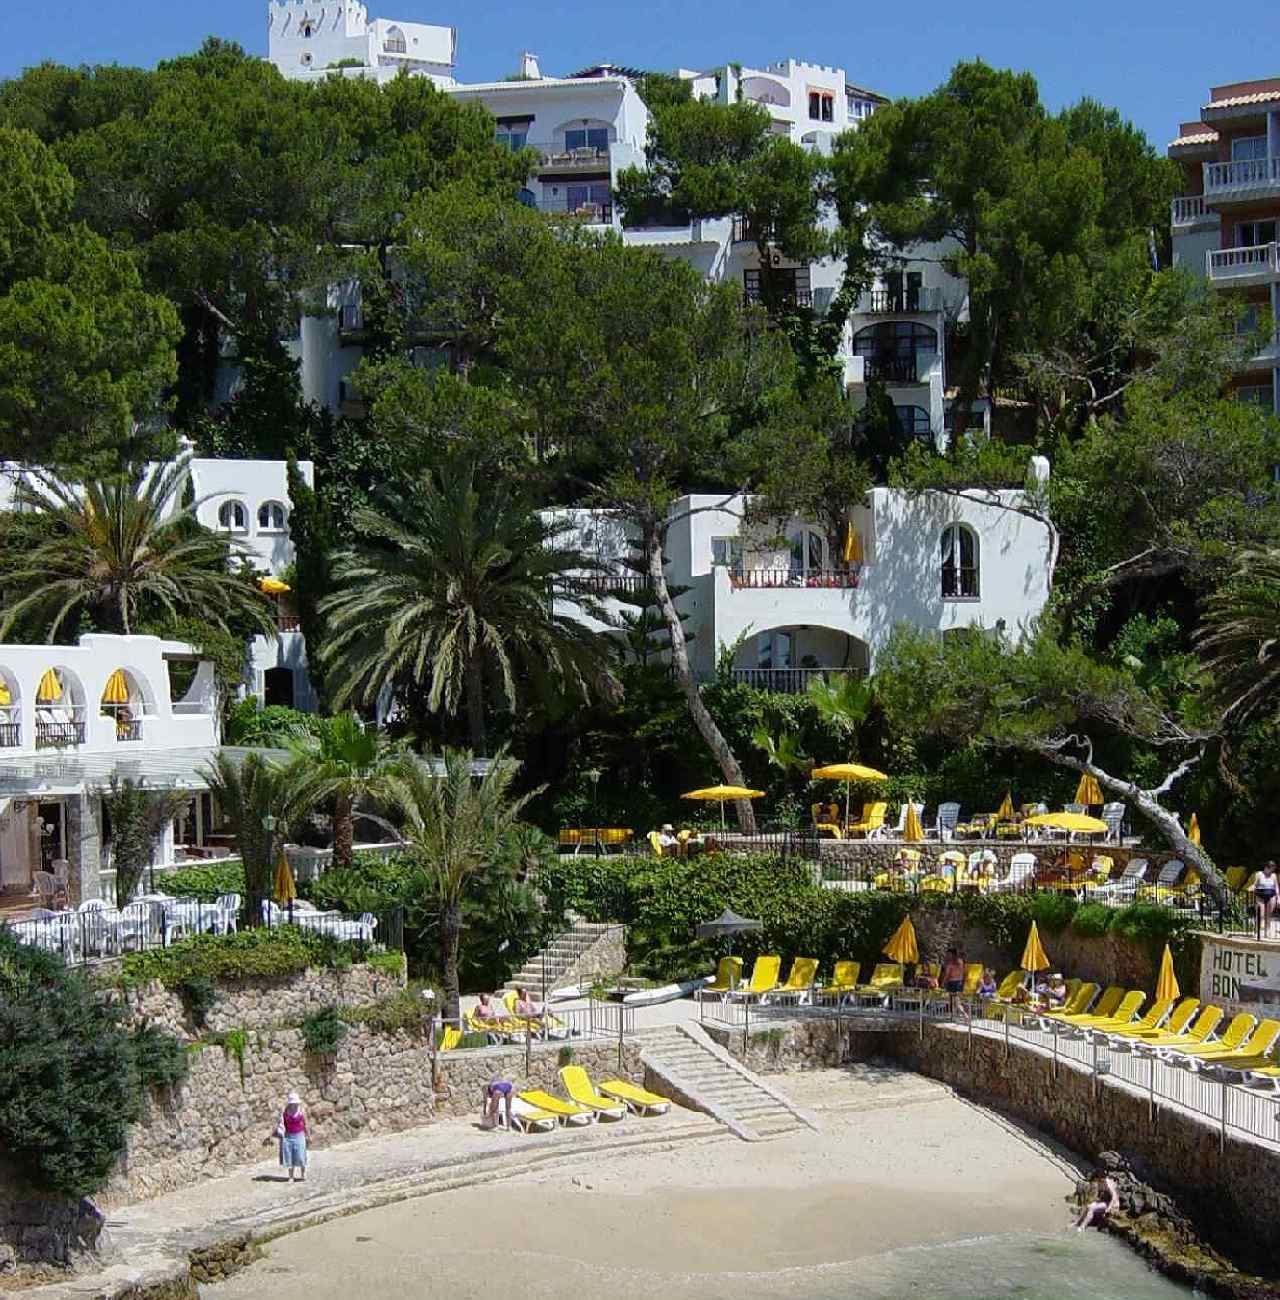 Bon Sol hotel in Mallorca cascades into a bay